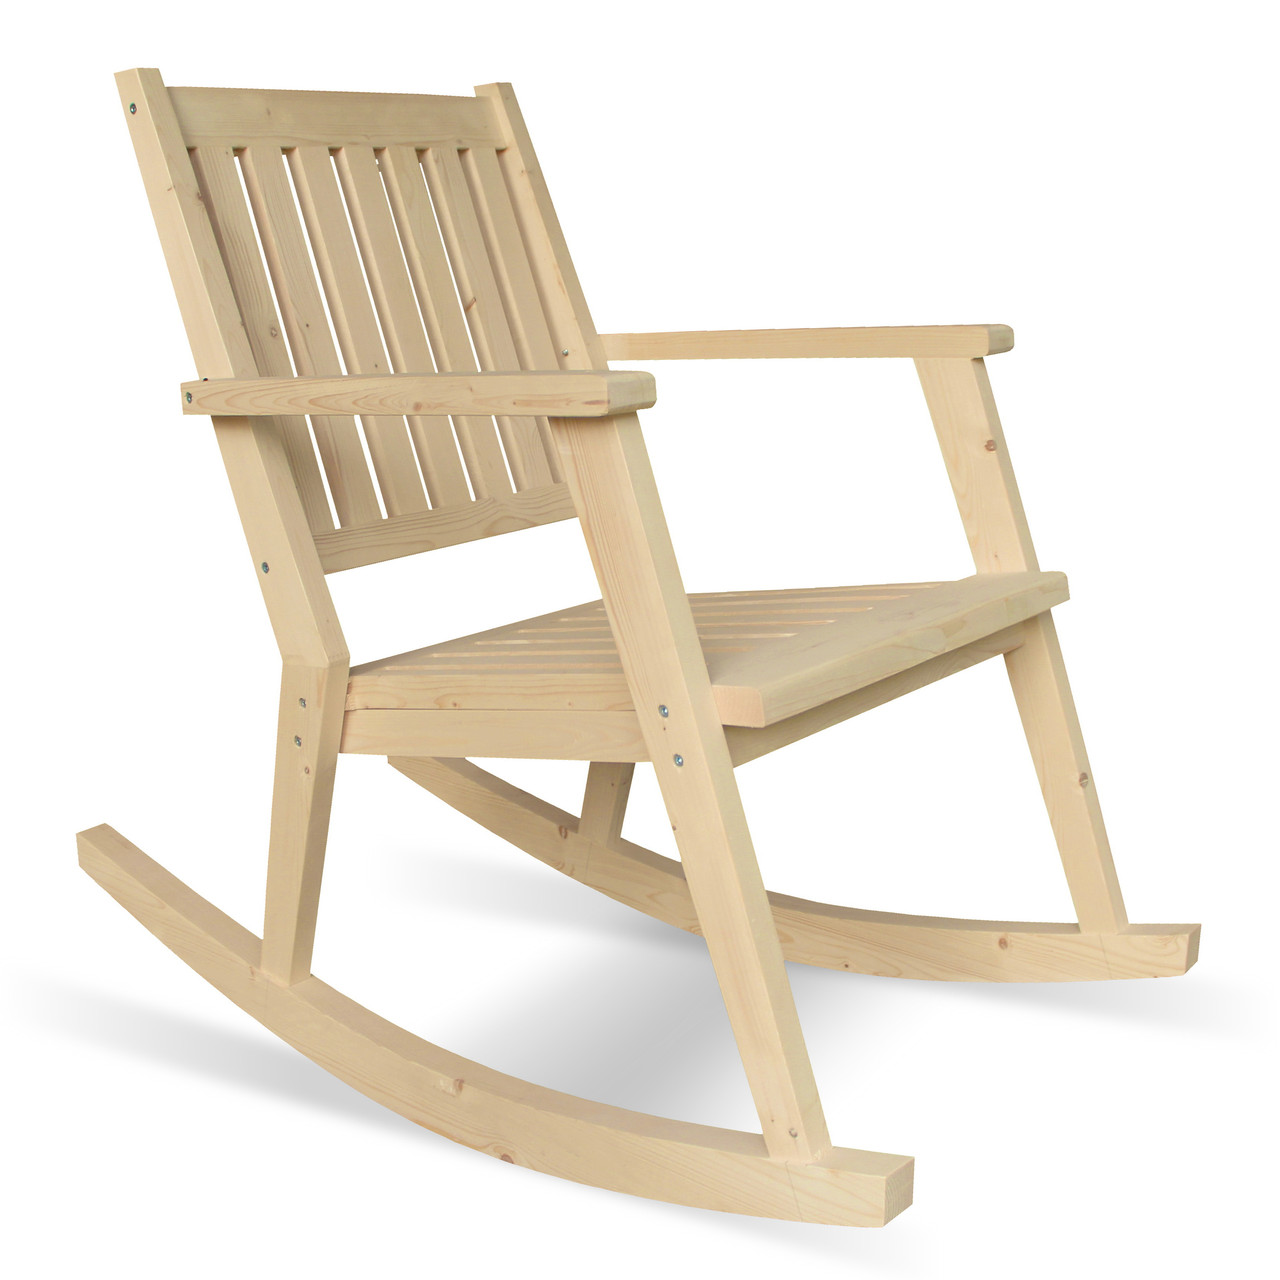 Кресло садовое с подлокотниками деревянное, МР-01